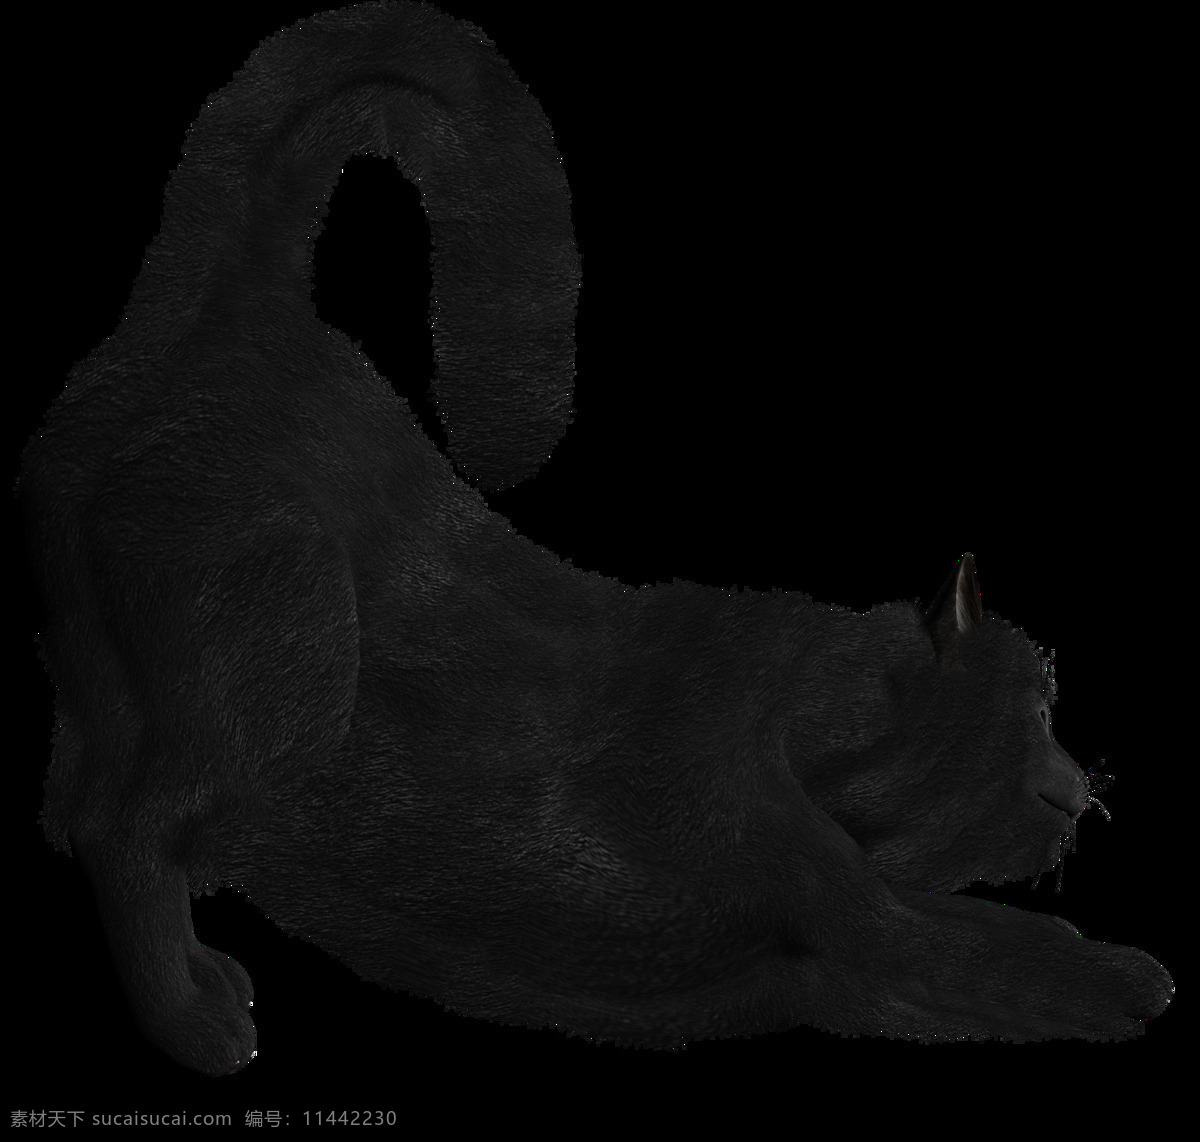 伸懒腰 黑猫 免 抠 透明 图 层 猫科动物 可爱动物图片 家禽 家畜 动物大全 野生动物 世界 上 最 萌 动物 可爱小狗图片 死人 小 动物图片 野生动物图片 萌宠图片